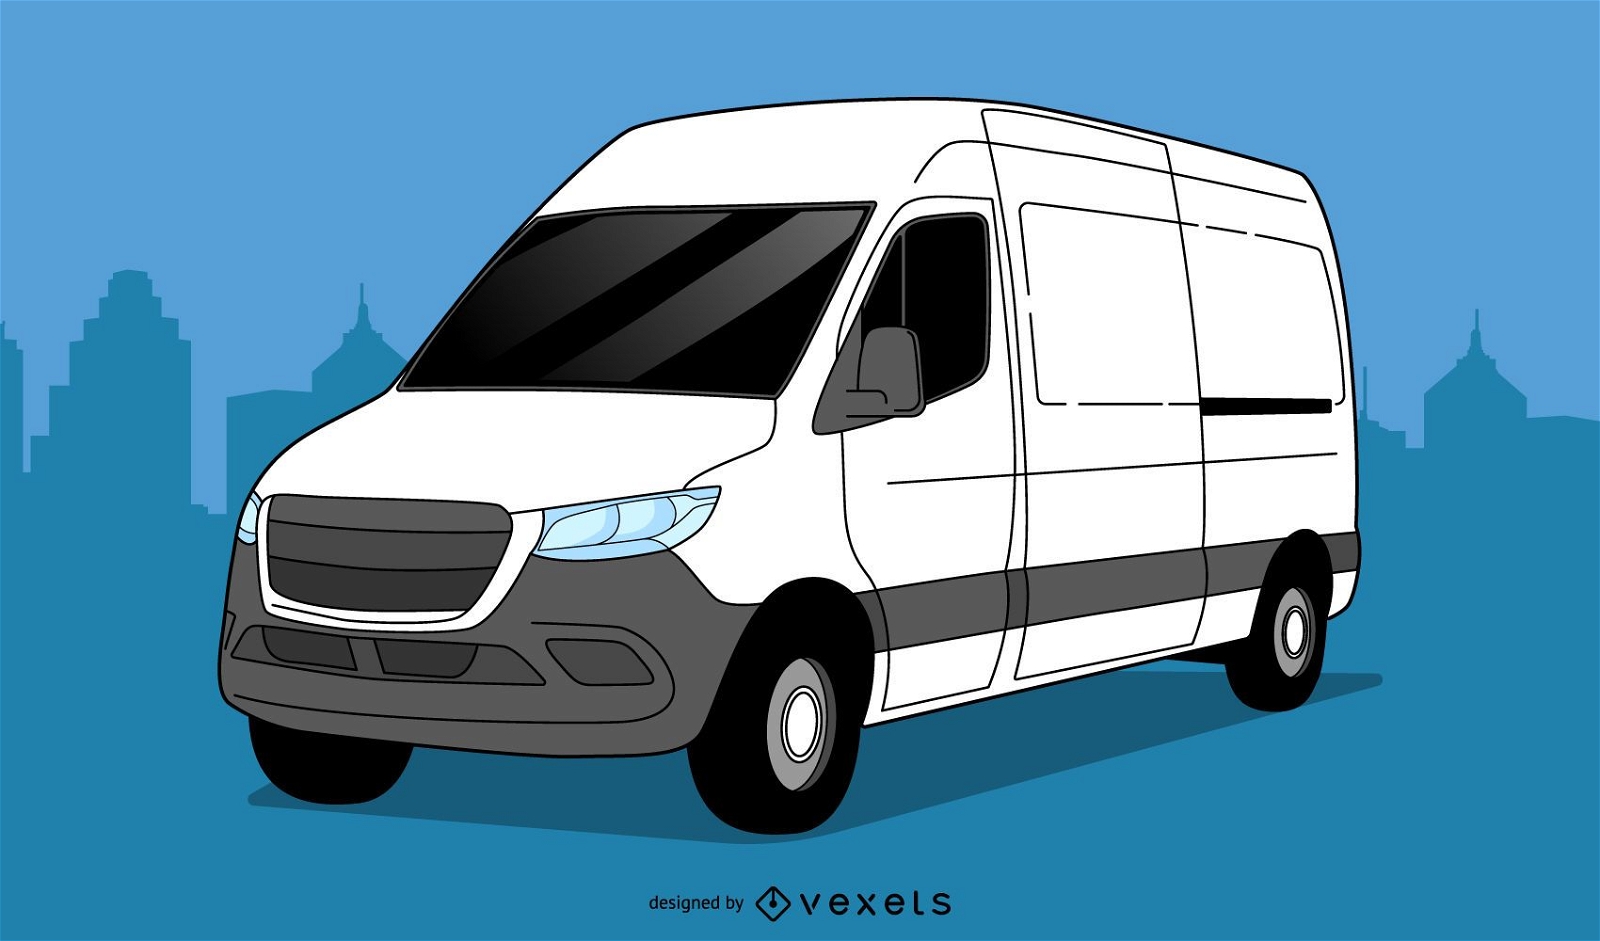 Diseño de ilustración de camioneta SUV